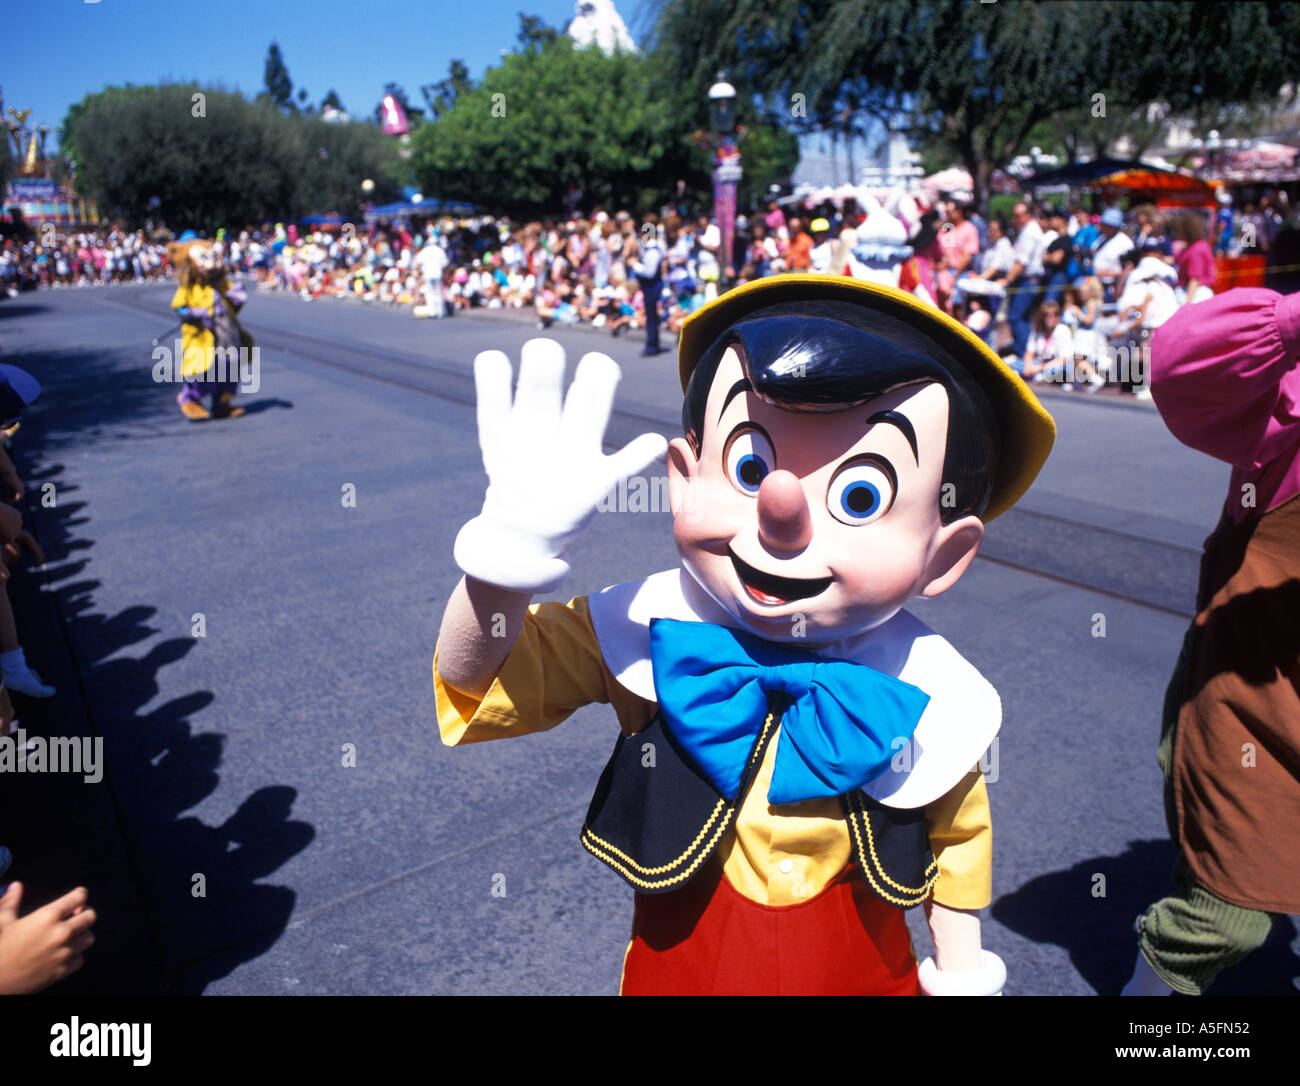 Pinocchio character at Disneyland in Anaheim California Stock Photo